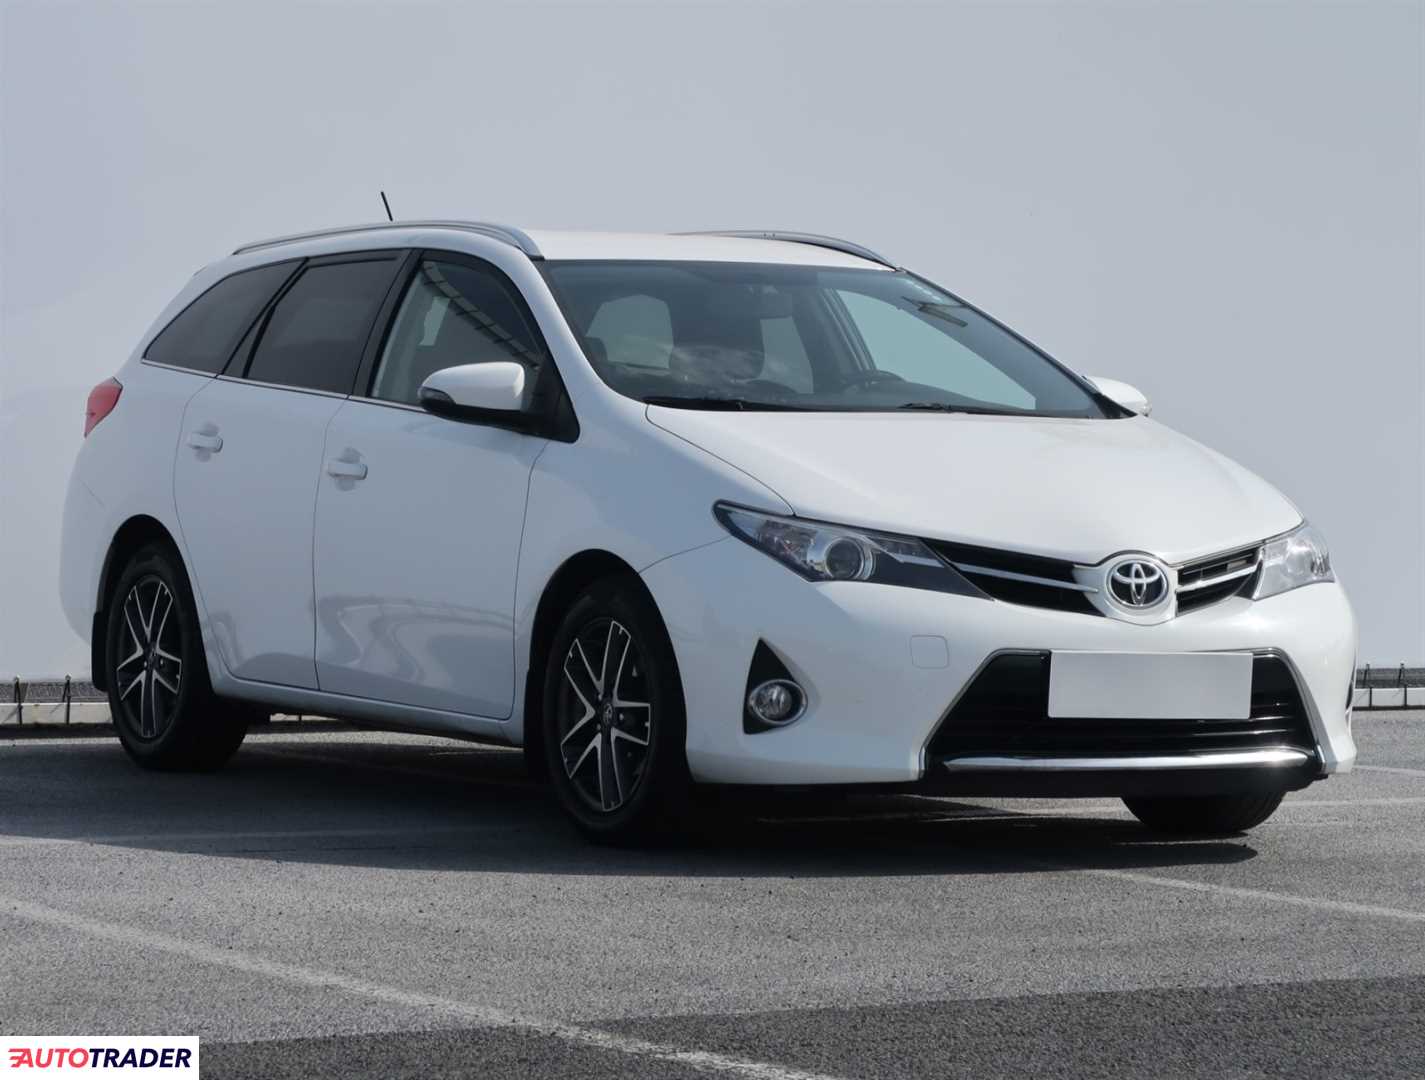 Toyota Auris 2014 1.6 130 KM